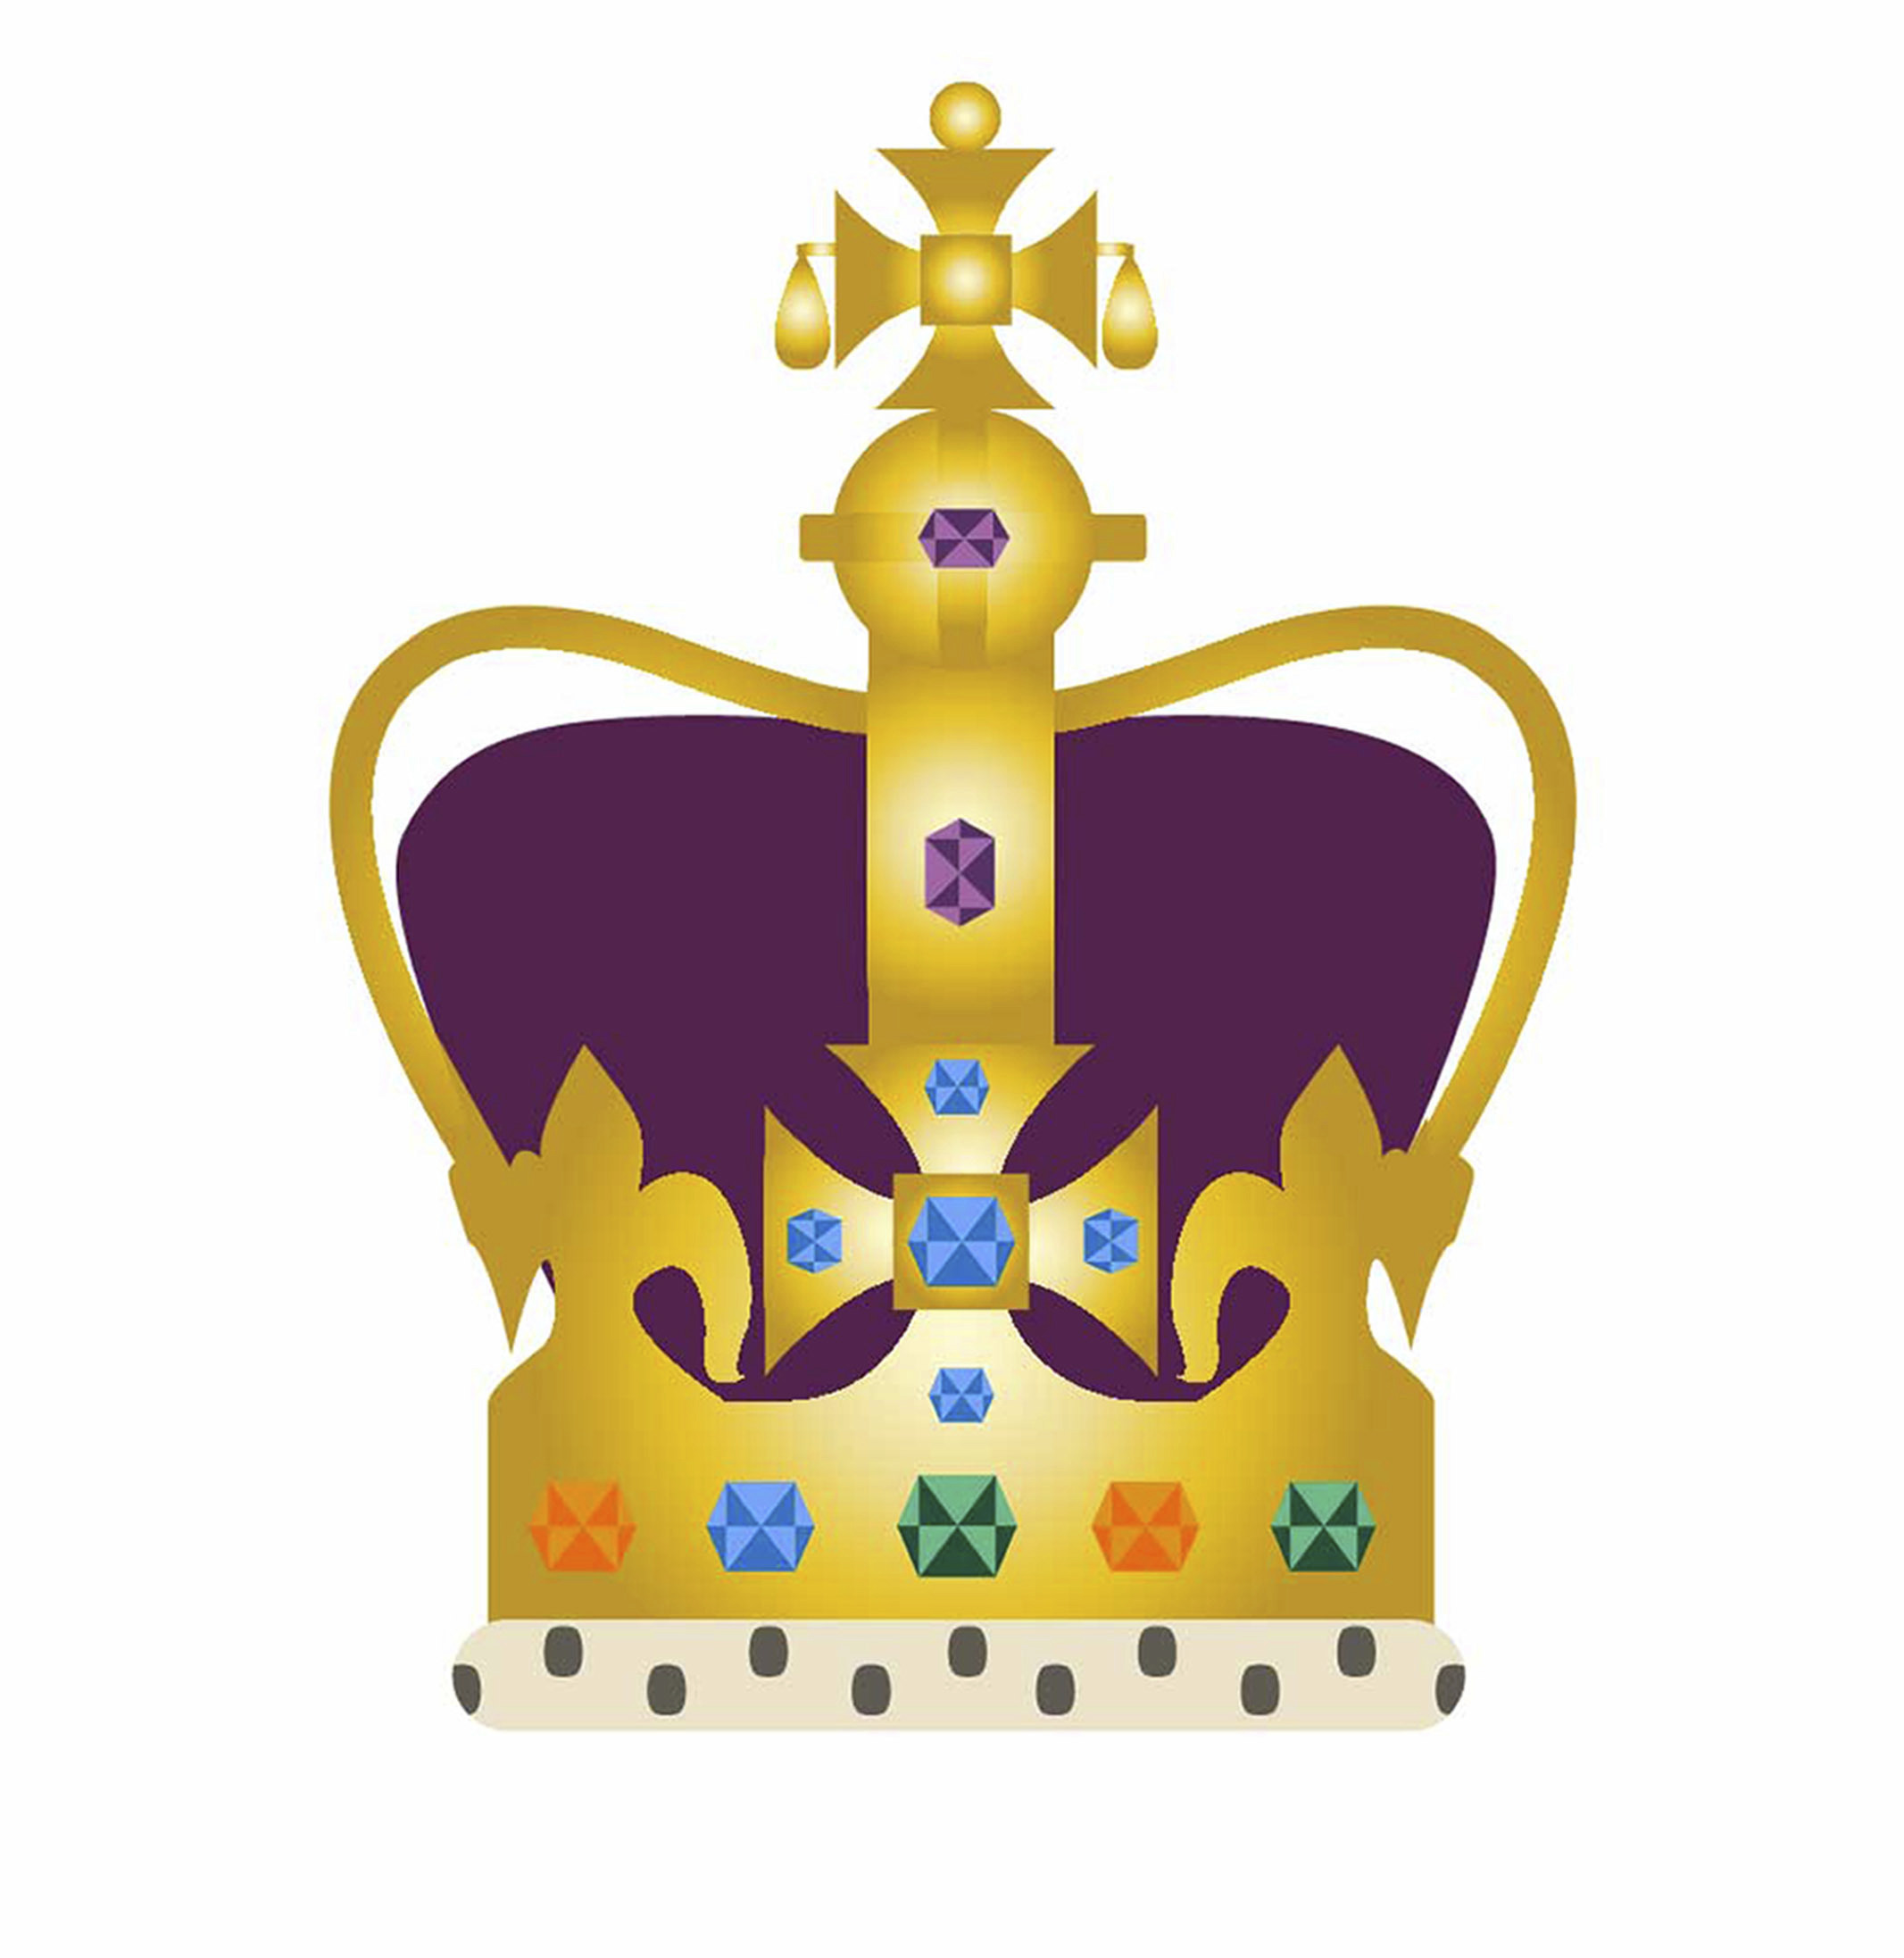 La ceremonia contará con su propio emoji, reflejo de la primera coronación británica de la era de las redes sociales. (Buckingham Palace via AP)